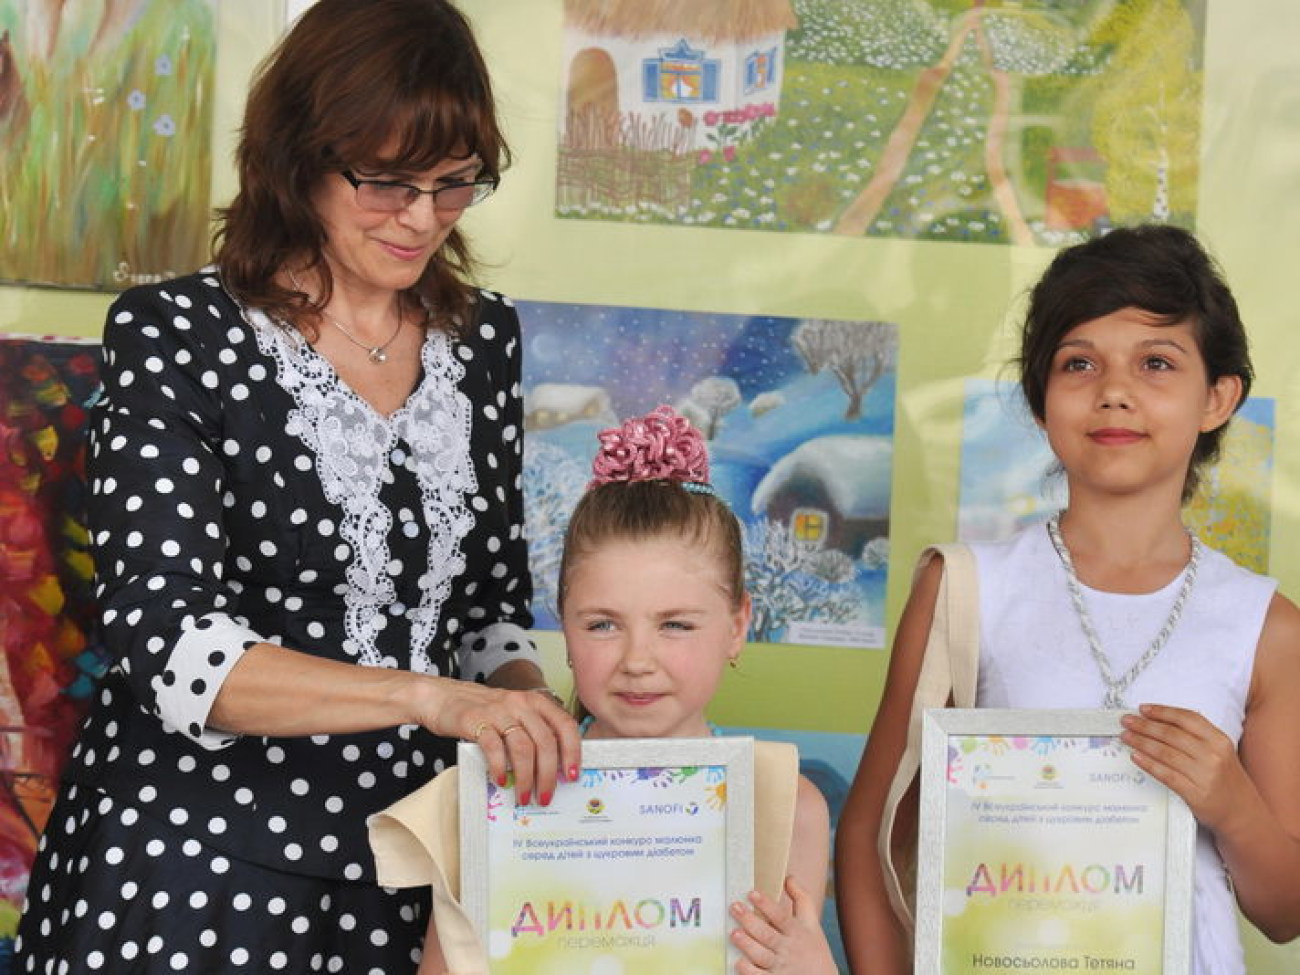 В Киеве определили лучшего юного художника с сахарным диабетом, 31 мая 2013г.